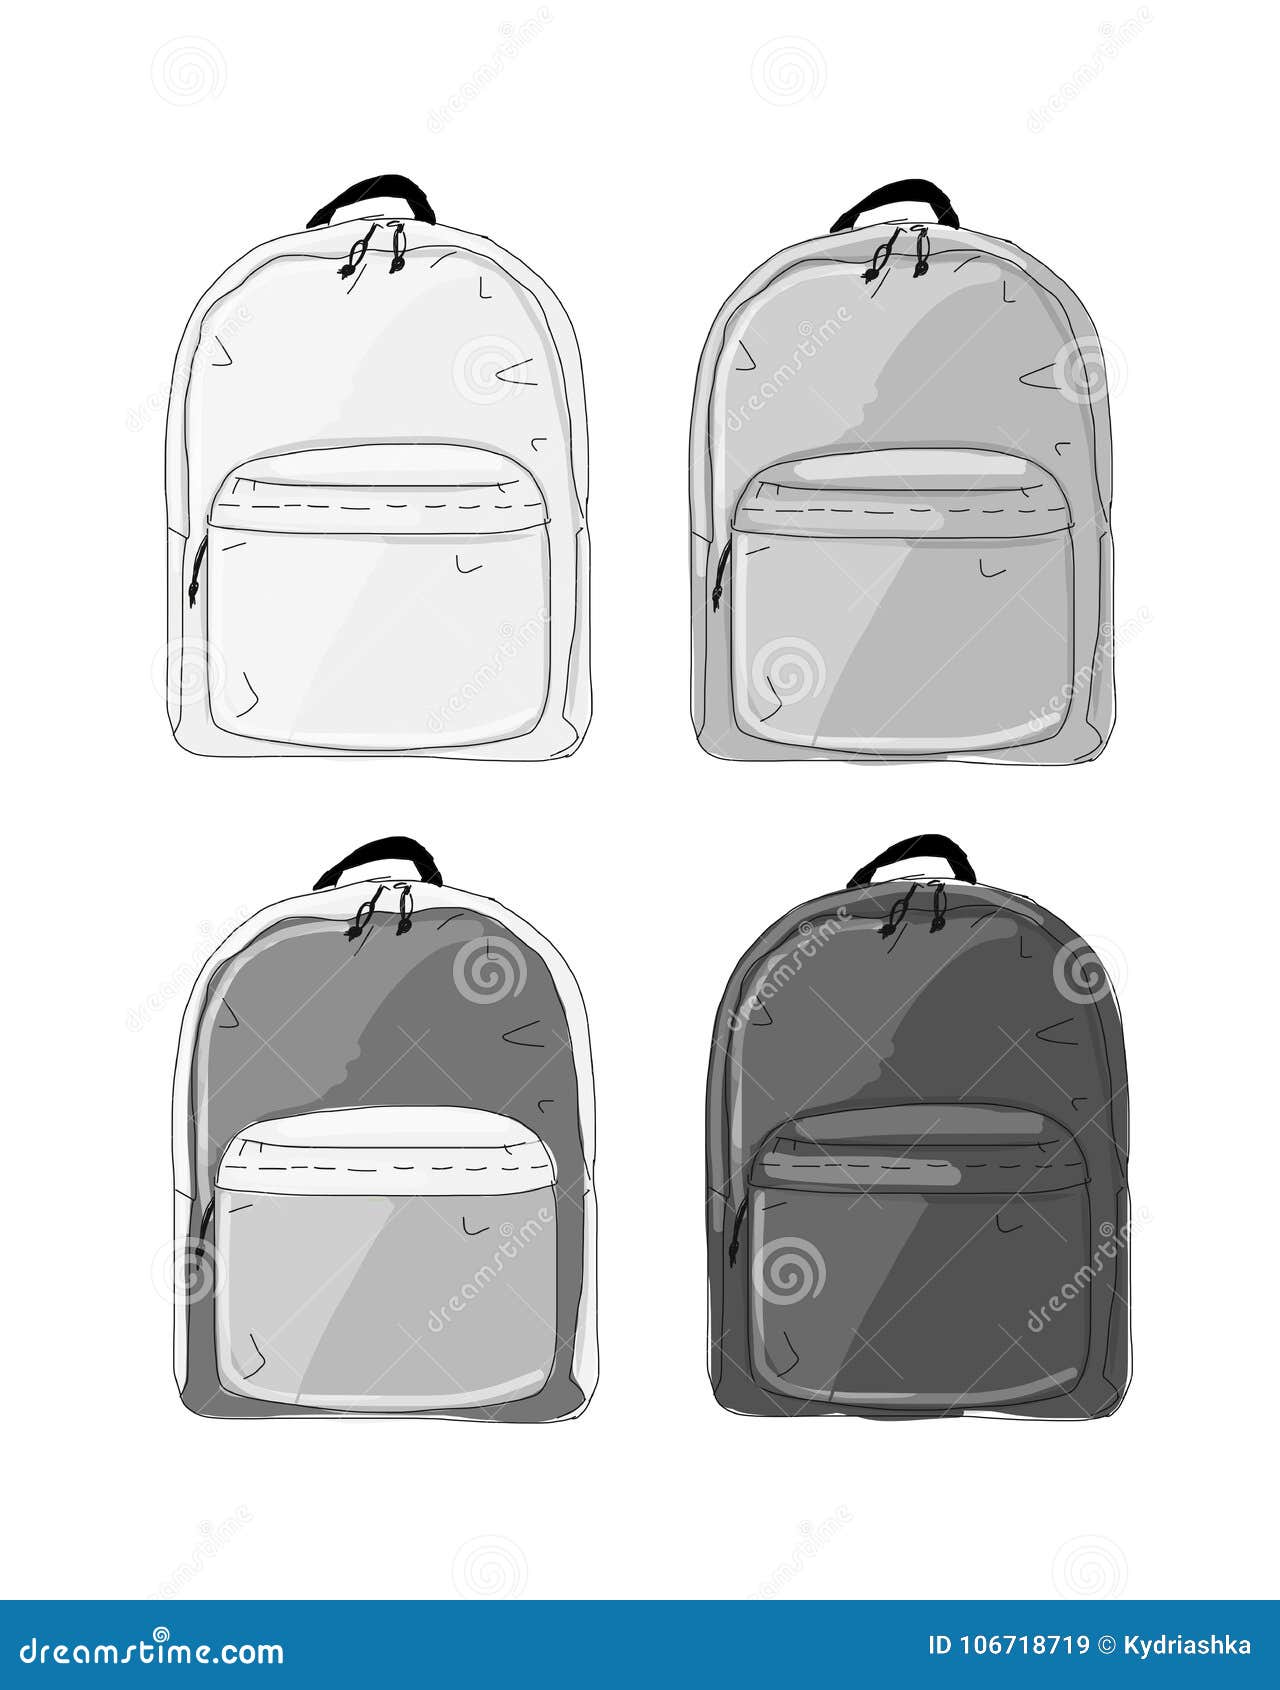 Download Backpack Mockup Sketch For Your Design Stock Vector Illustration Of Backpack Drawn 106718719